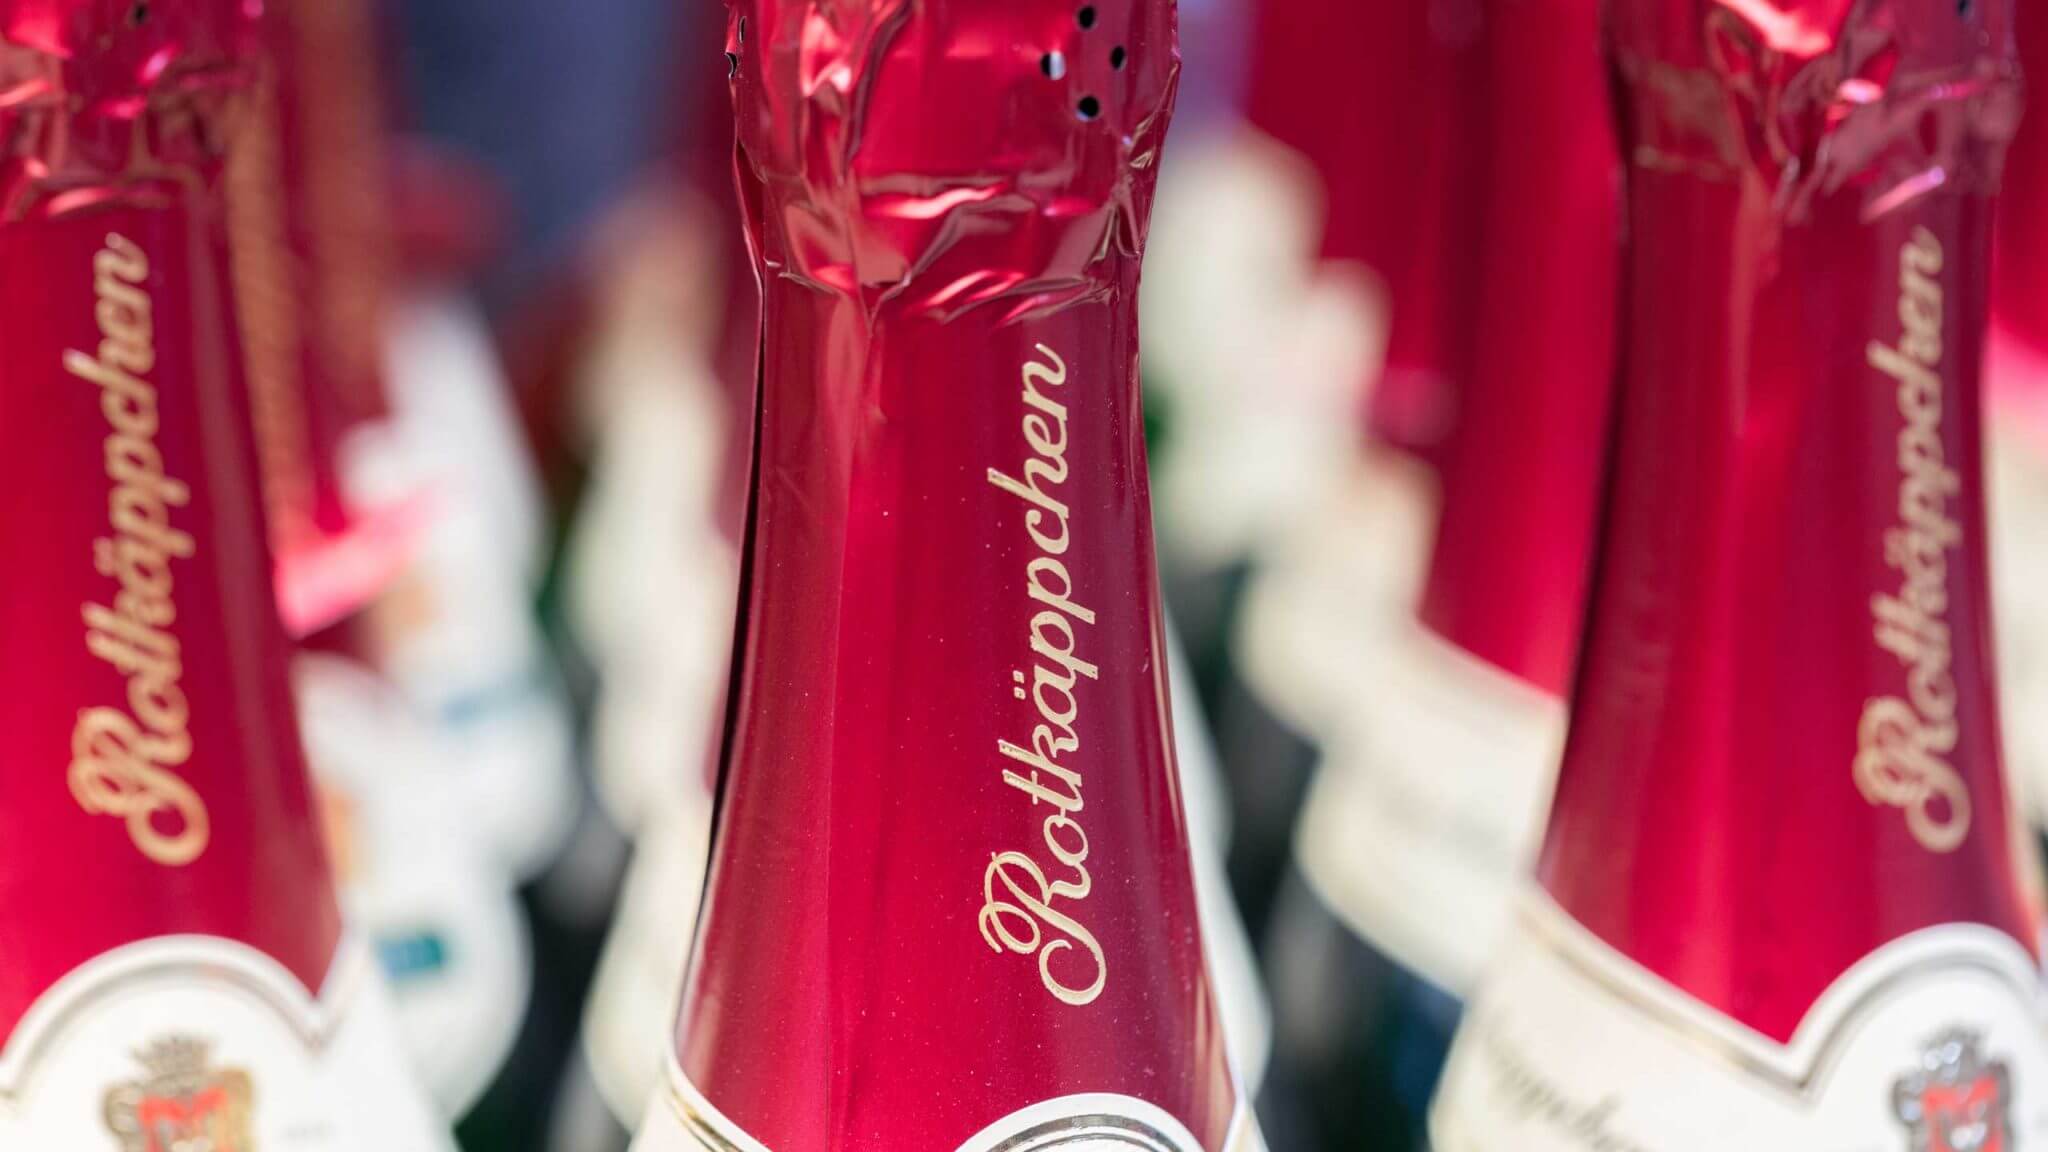 Rotkaeppchen sparkling wine bottles